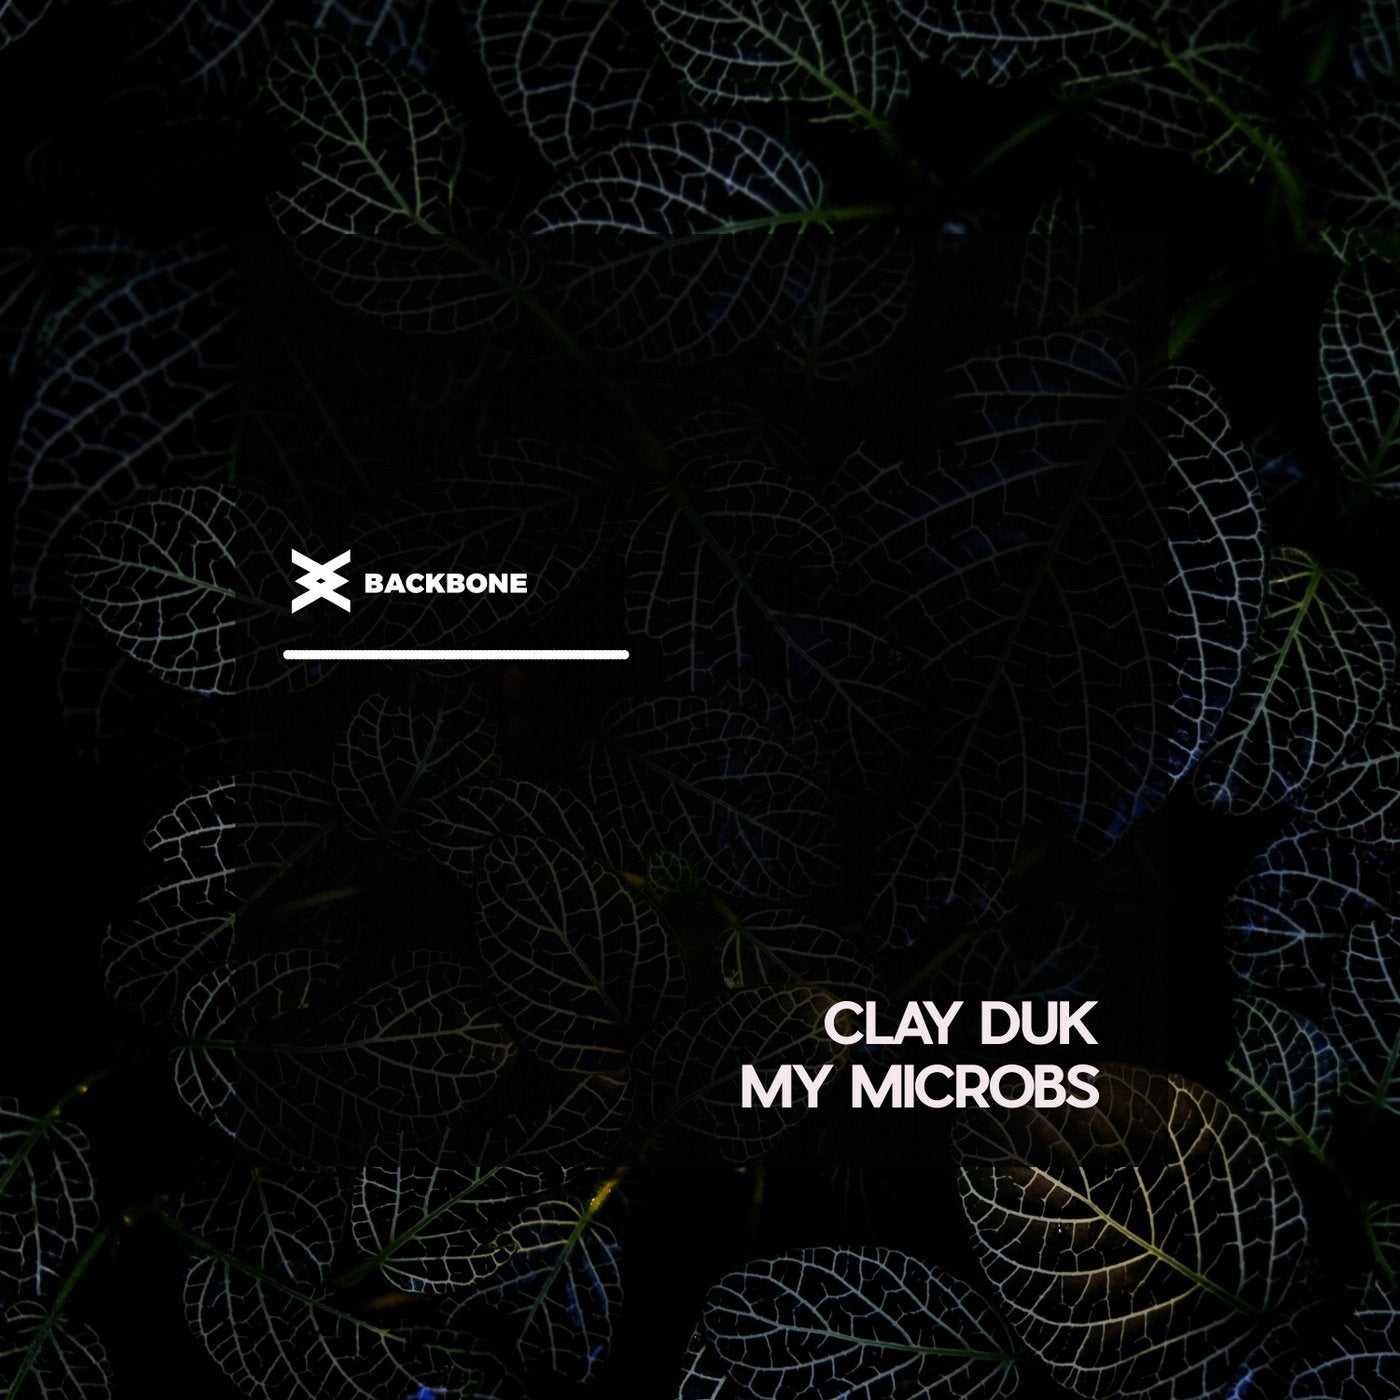 My Microbs